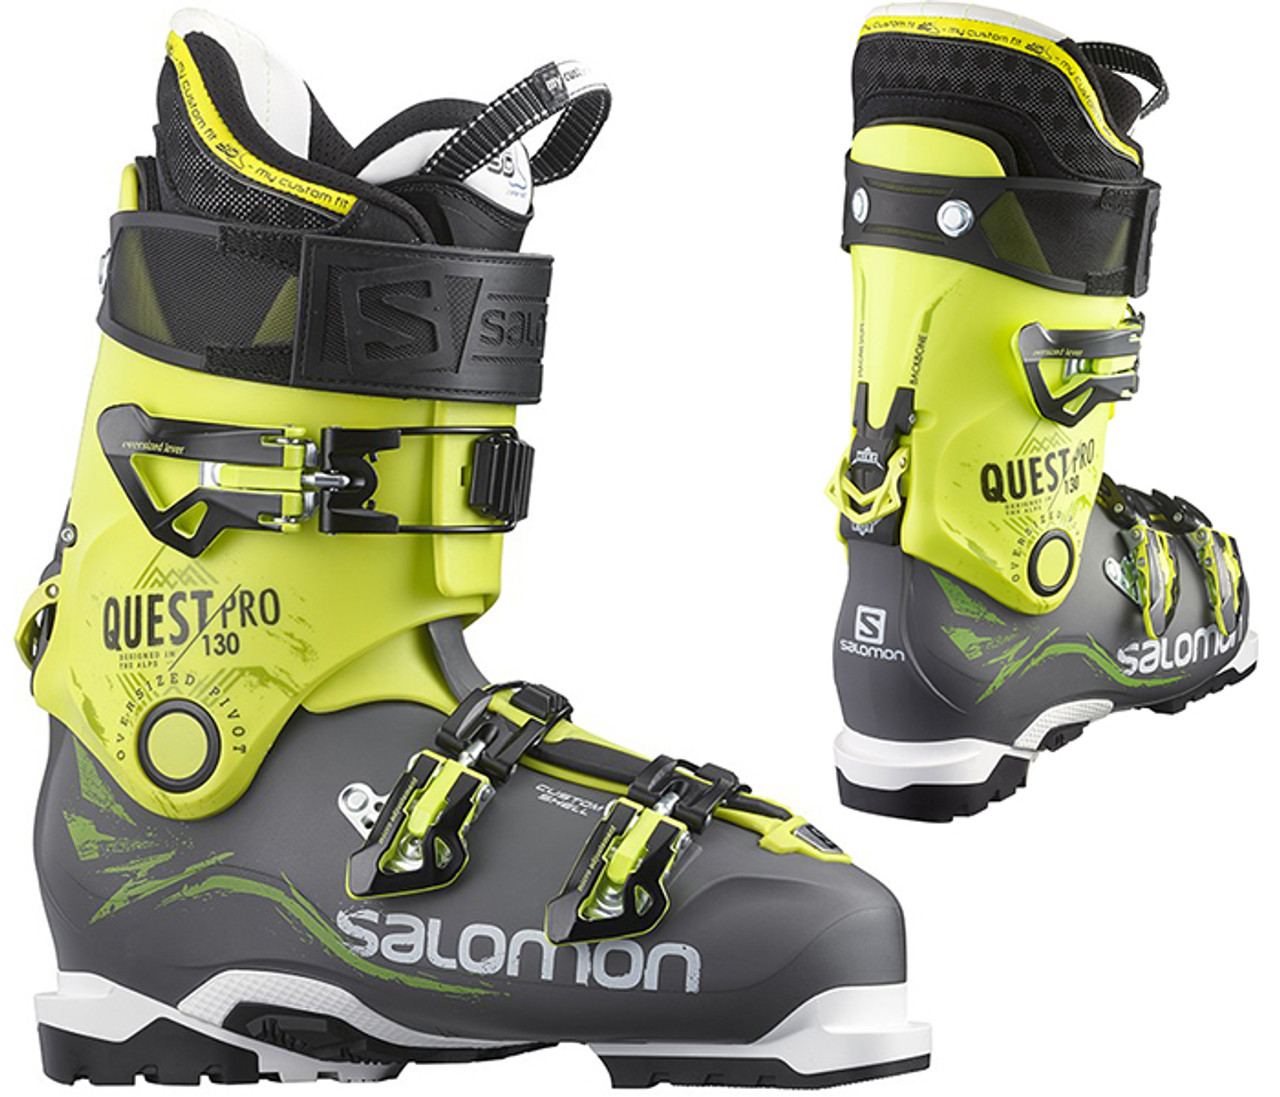 Egetræ mærke Brandmand Salomon Quest Pro 130 Ski Boots 2015